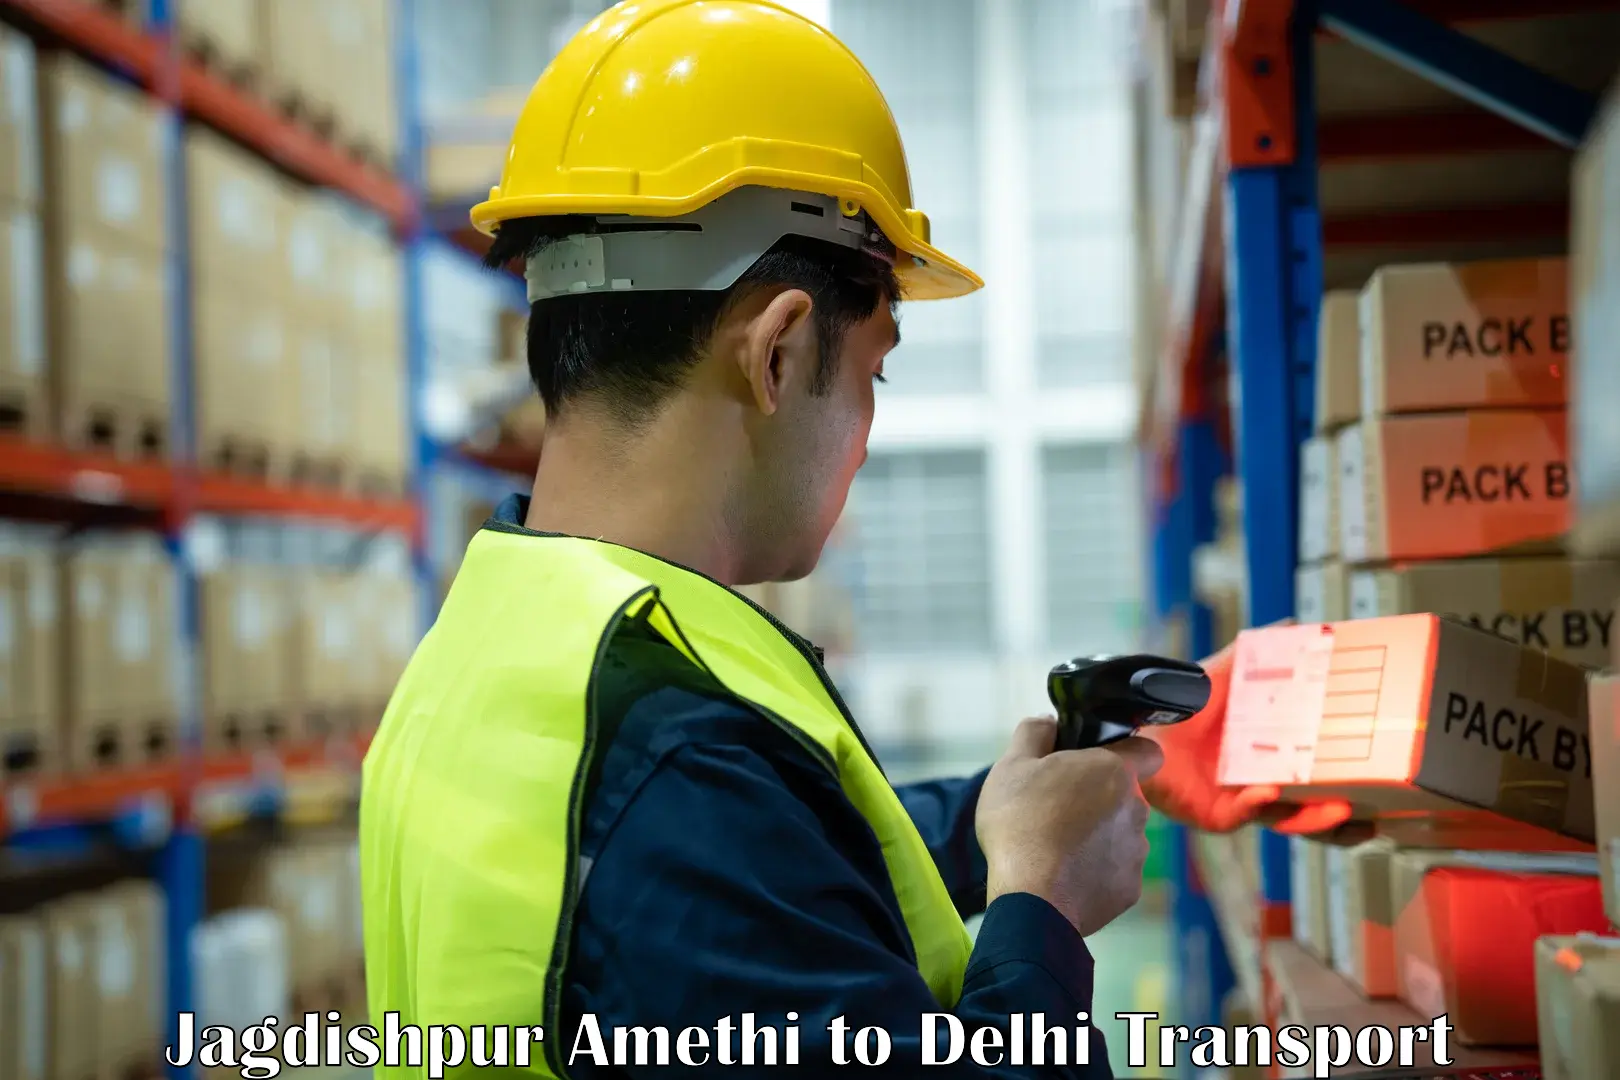 Furniture transport service Jagdishpur Amethi to Delhi Technological University DTU